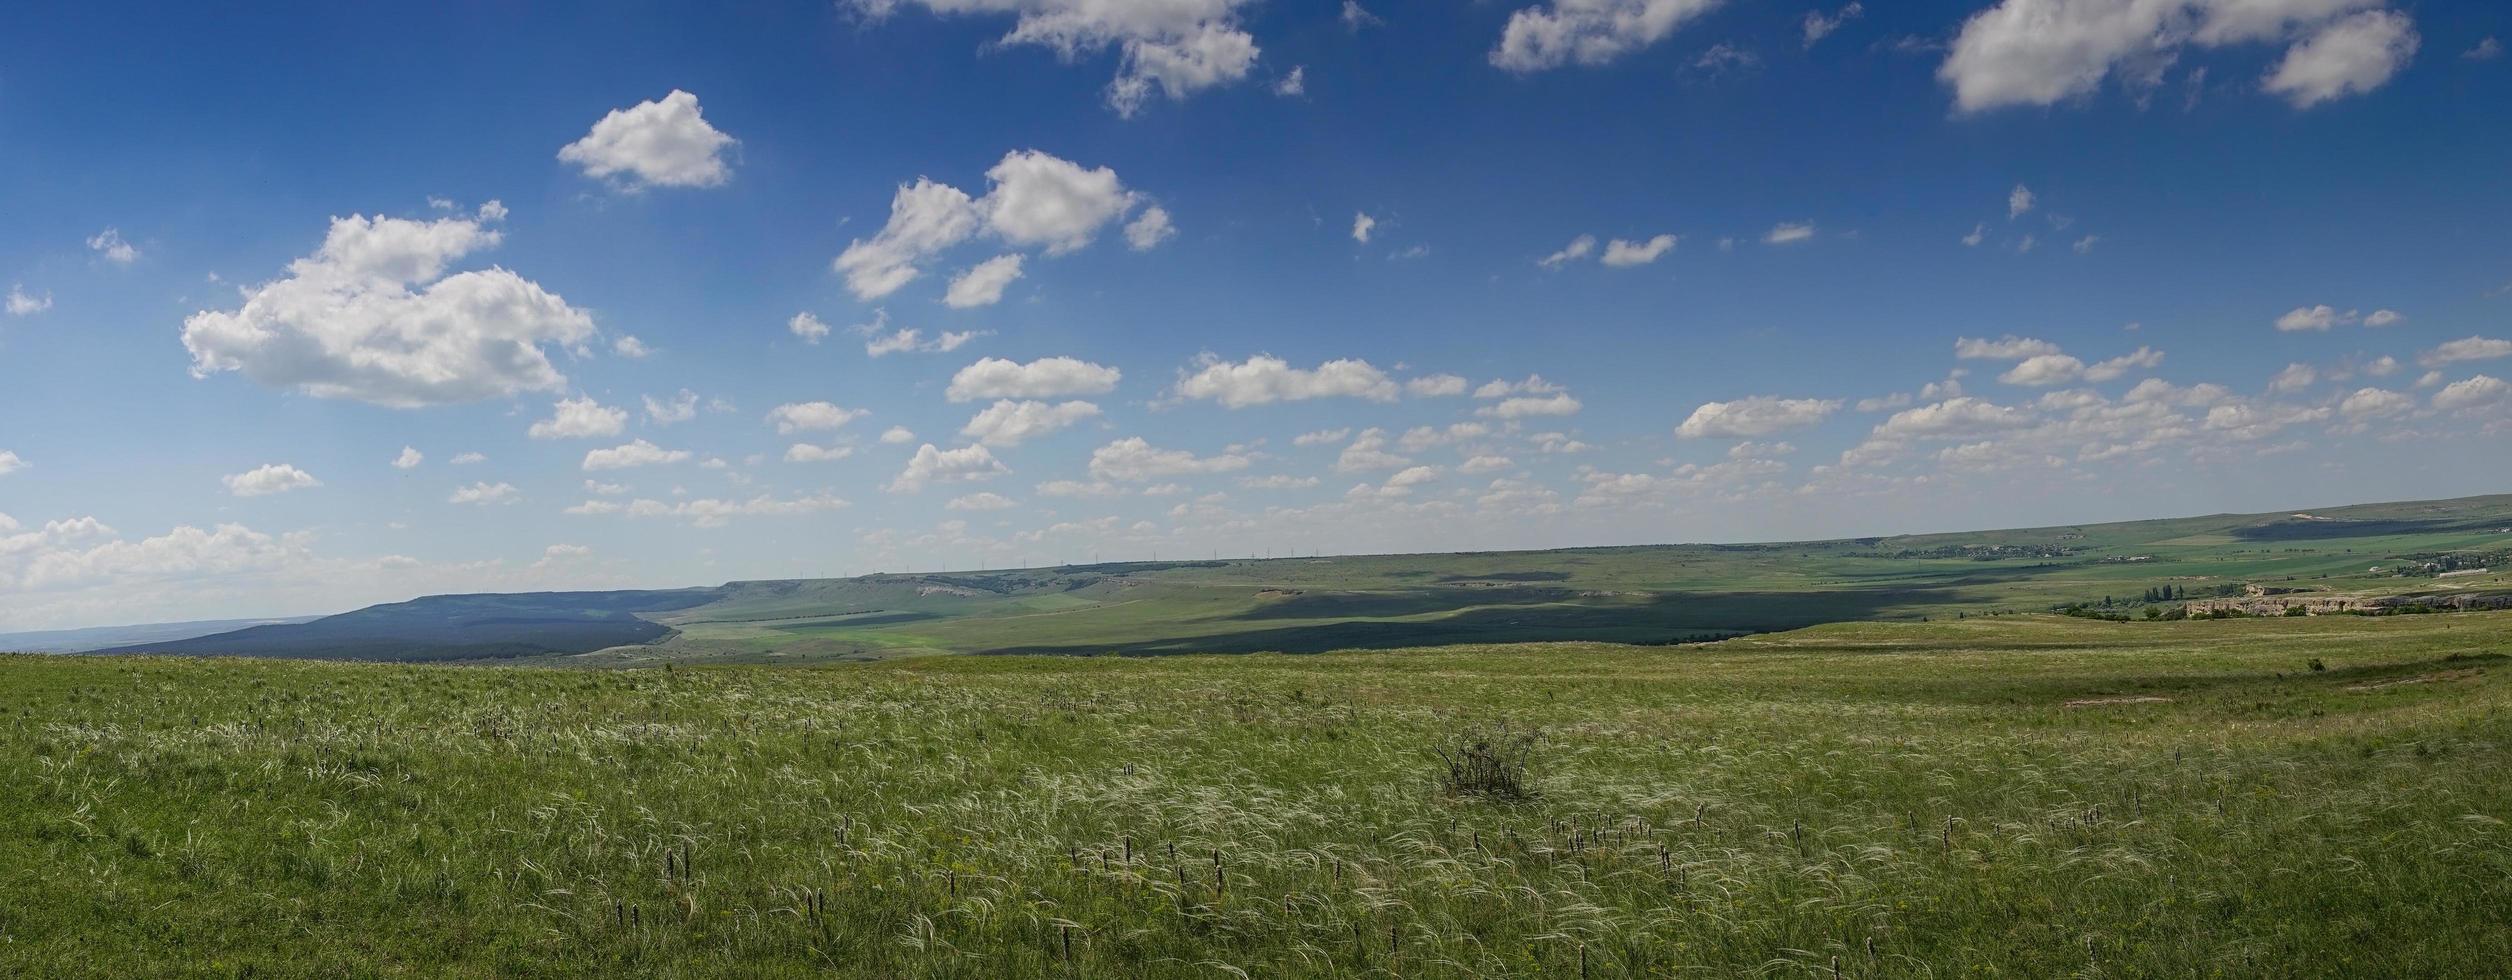 panorama da paisagem de estepe com grama foto